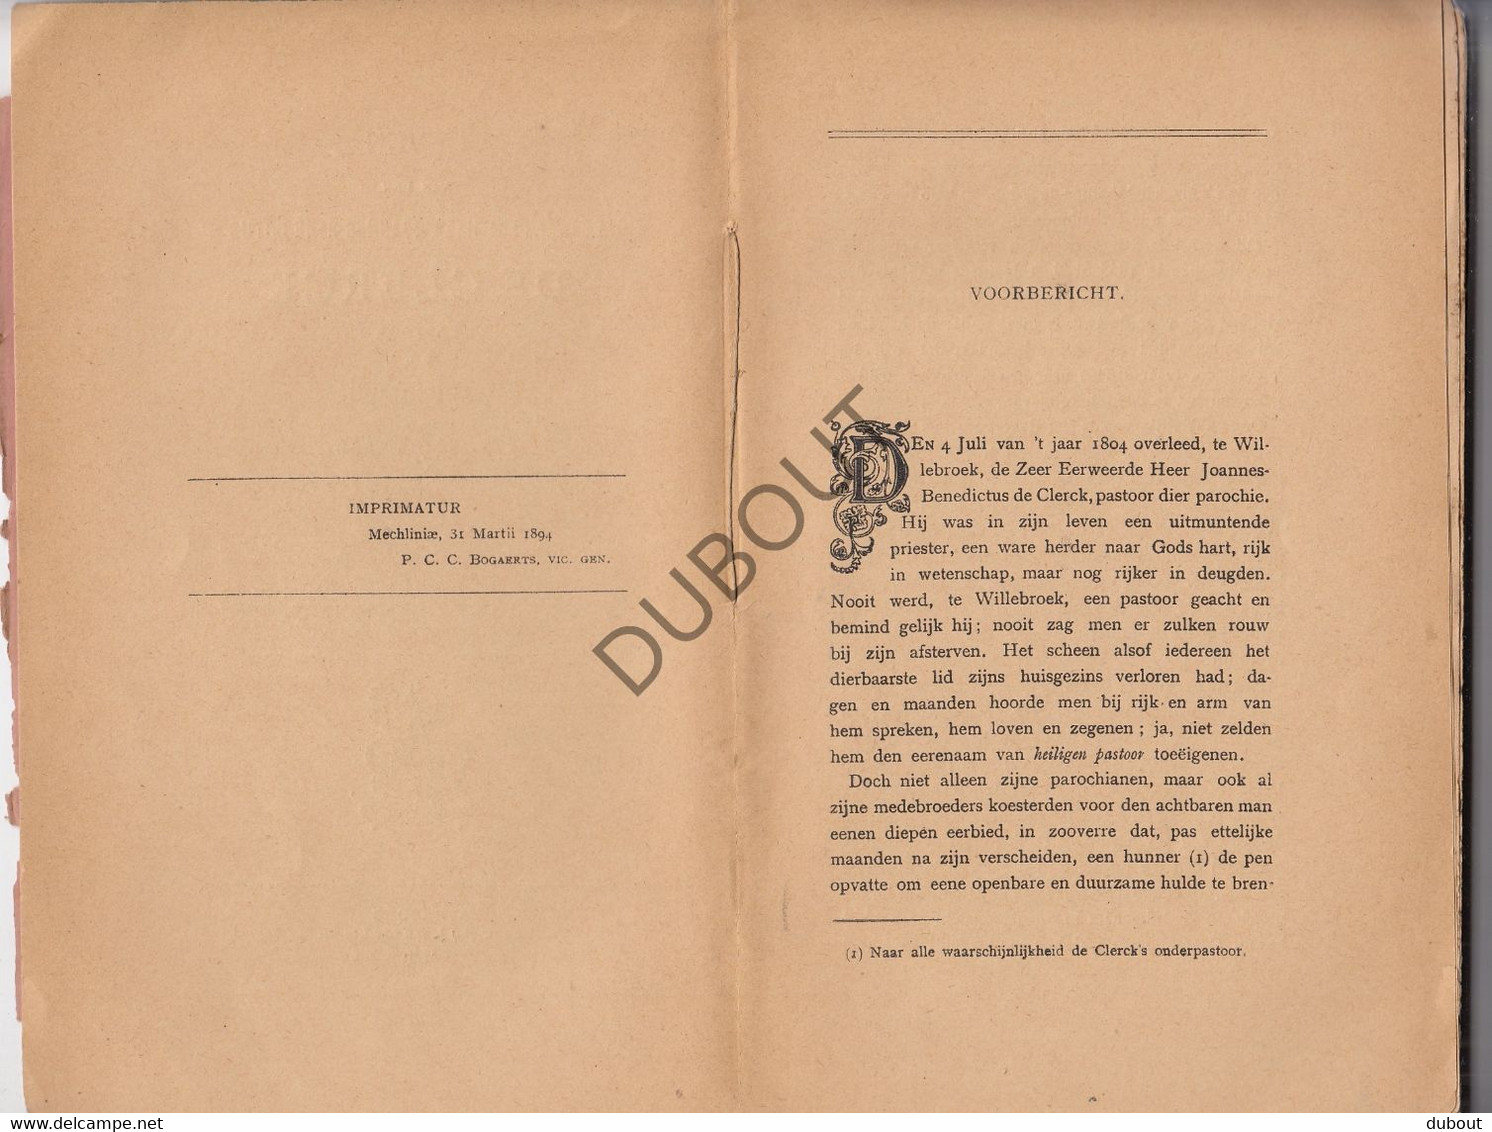 WILLEBROEK - Leven Van Eerwaarde Heer J-B De Clerck - A.M.J. Van Meel, Pastoor Van Diest - 1894    (V1200) - Antiguos